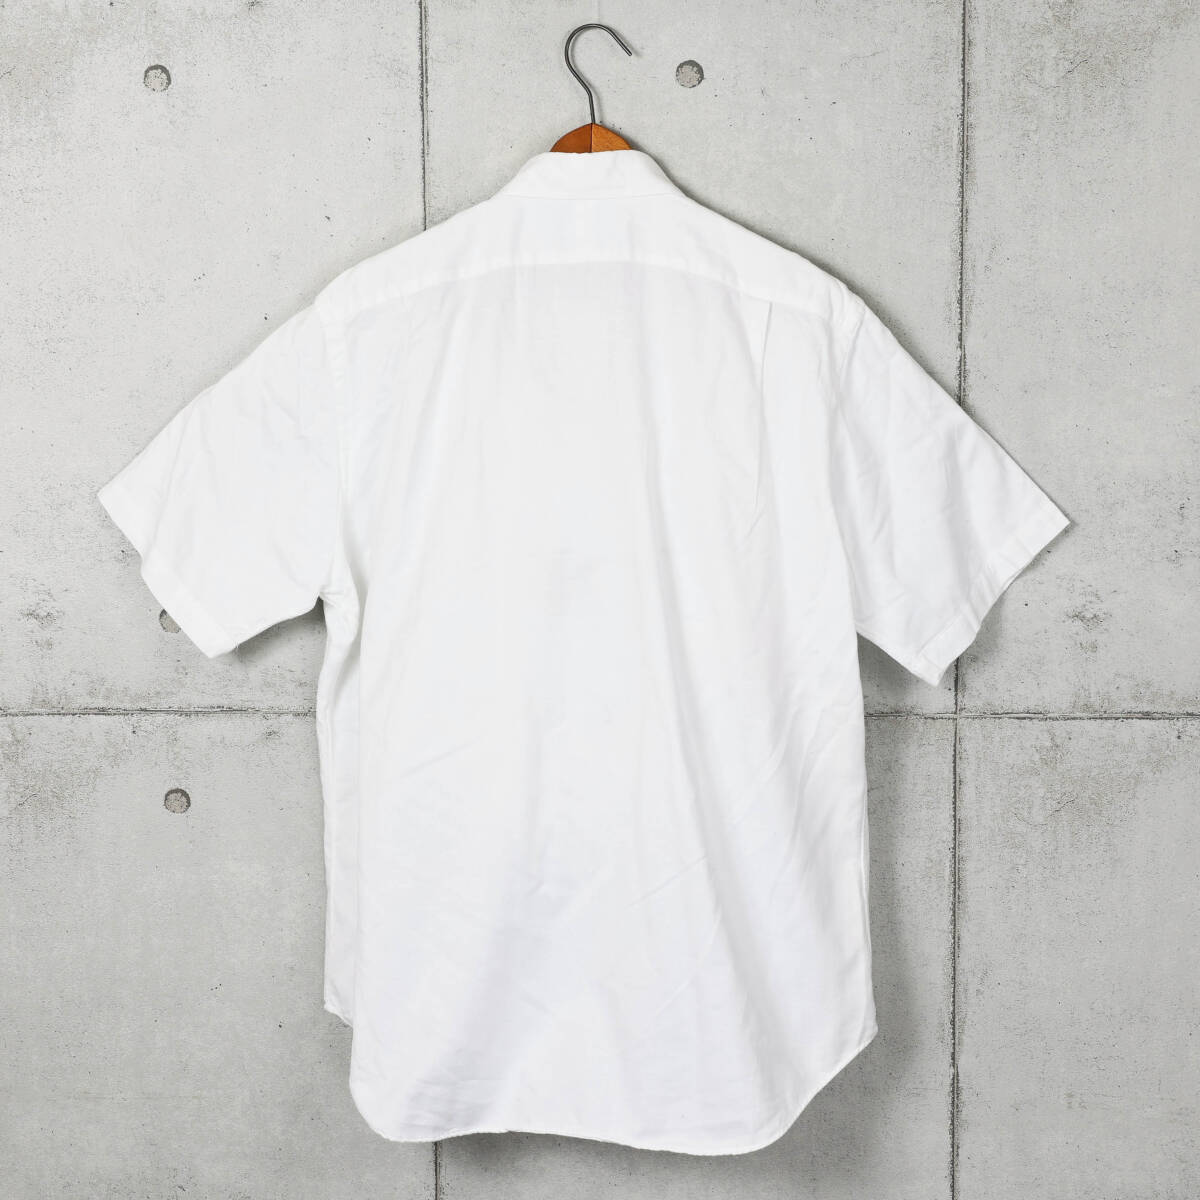 Poloラルフローレン◆ヘリンボーン 半袖 レギュラーカラーシャツ◆ホワイト◆サイズLの画像2